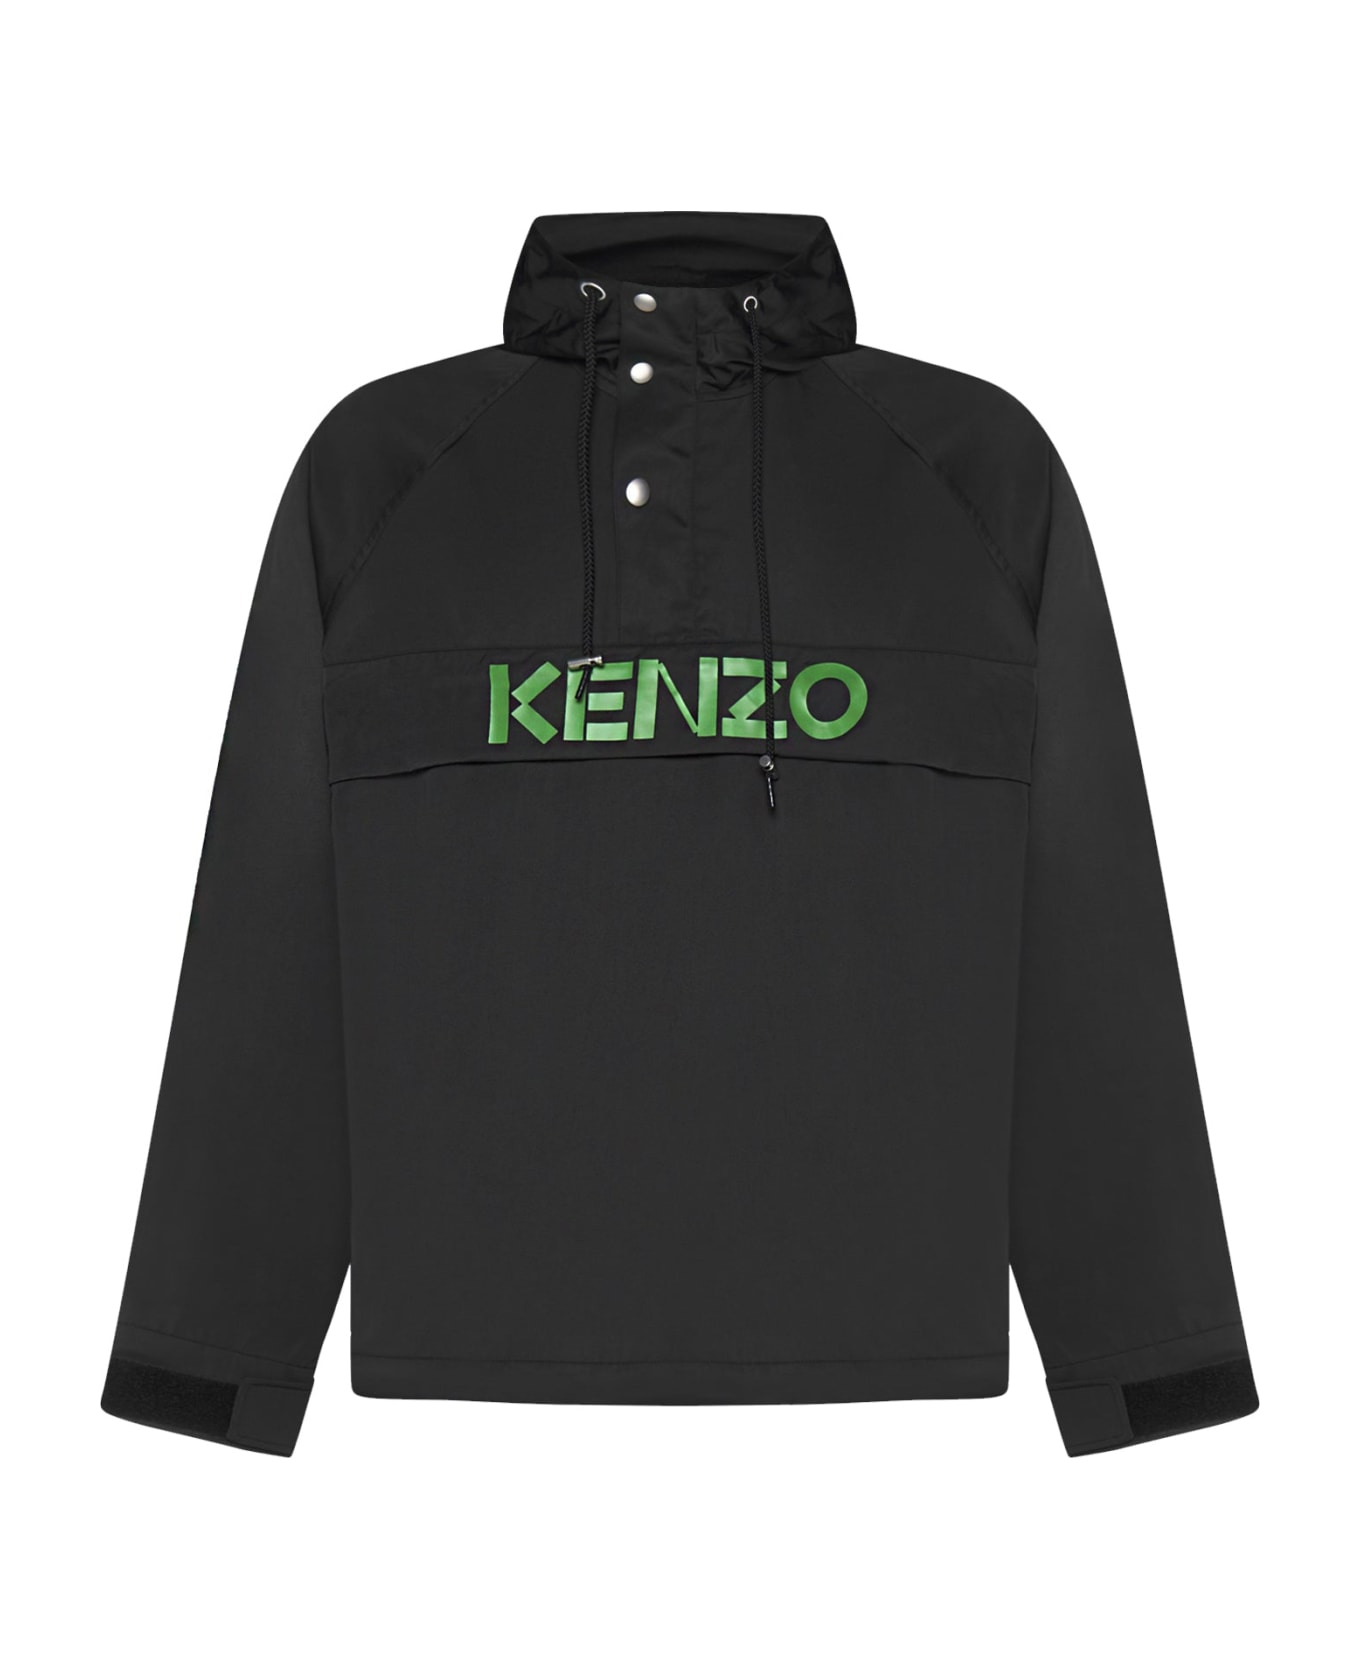 Kenzo Hoodded Logo Jacket - Black